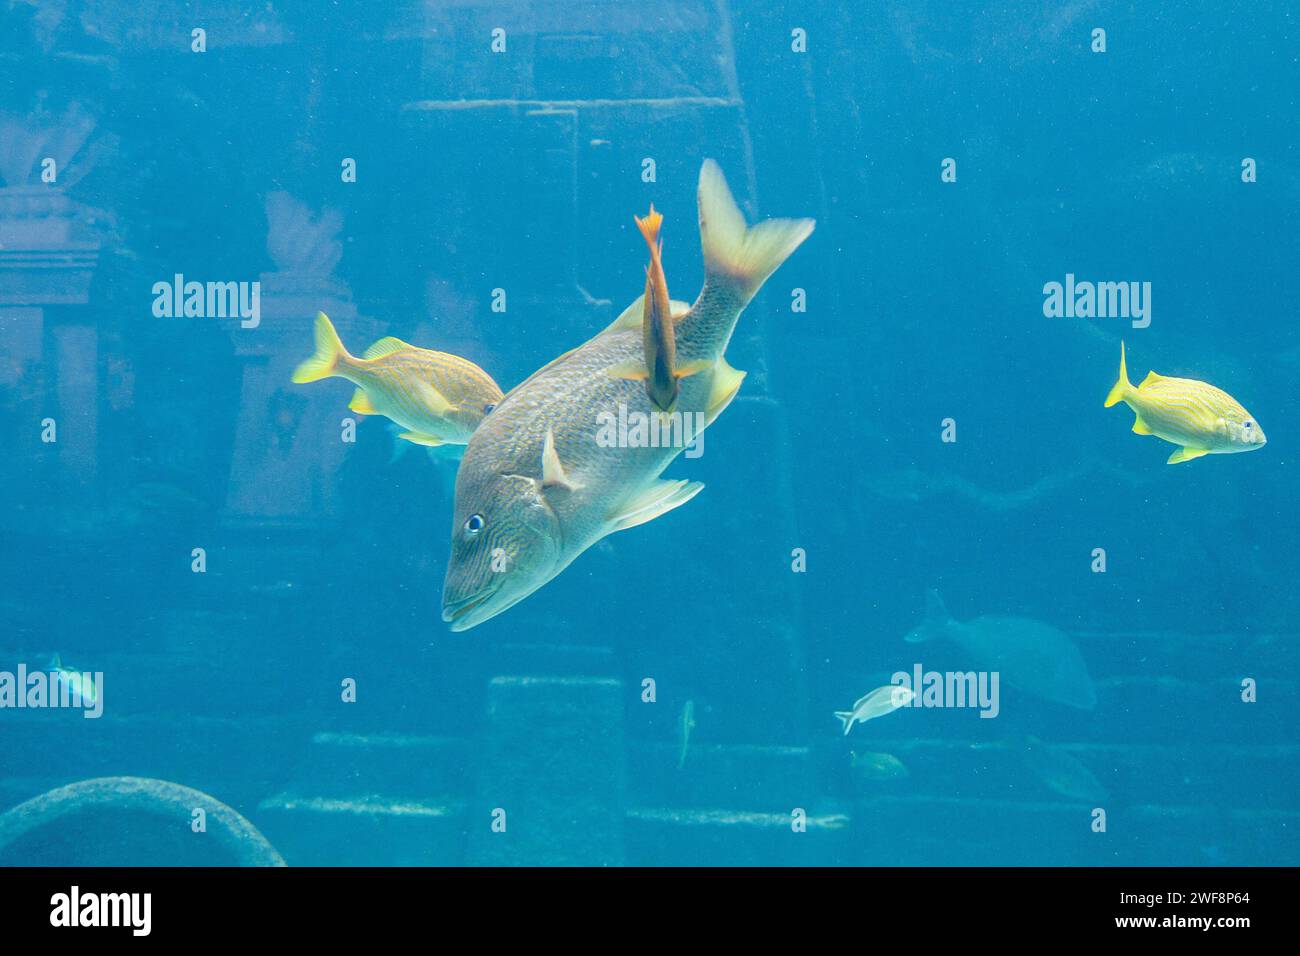 Colorful fish swimming in large aquarium. Stock Photo